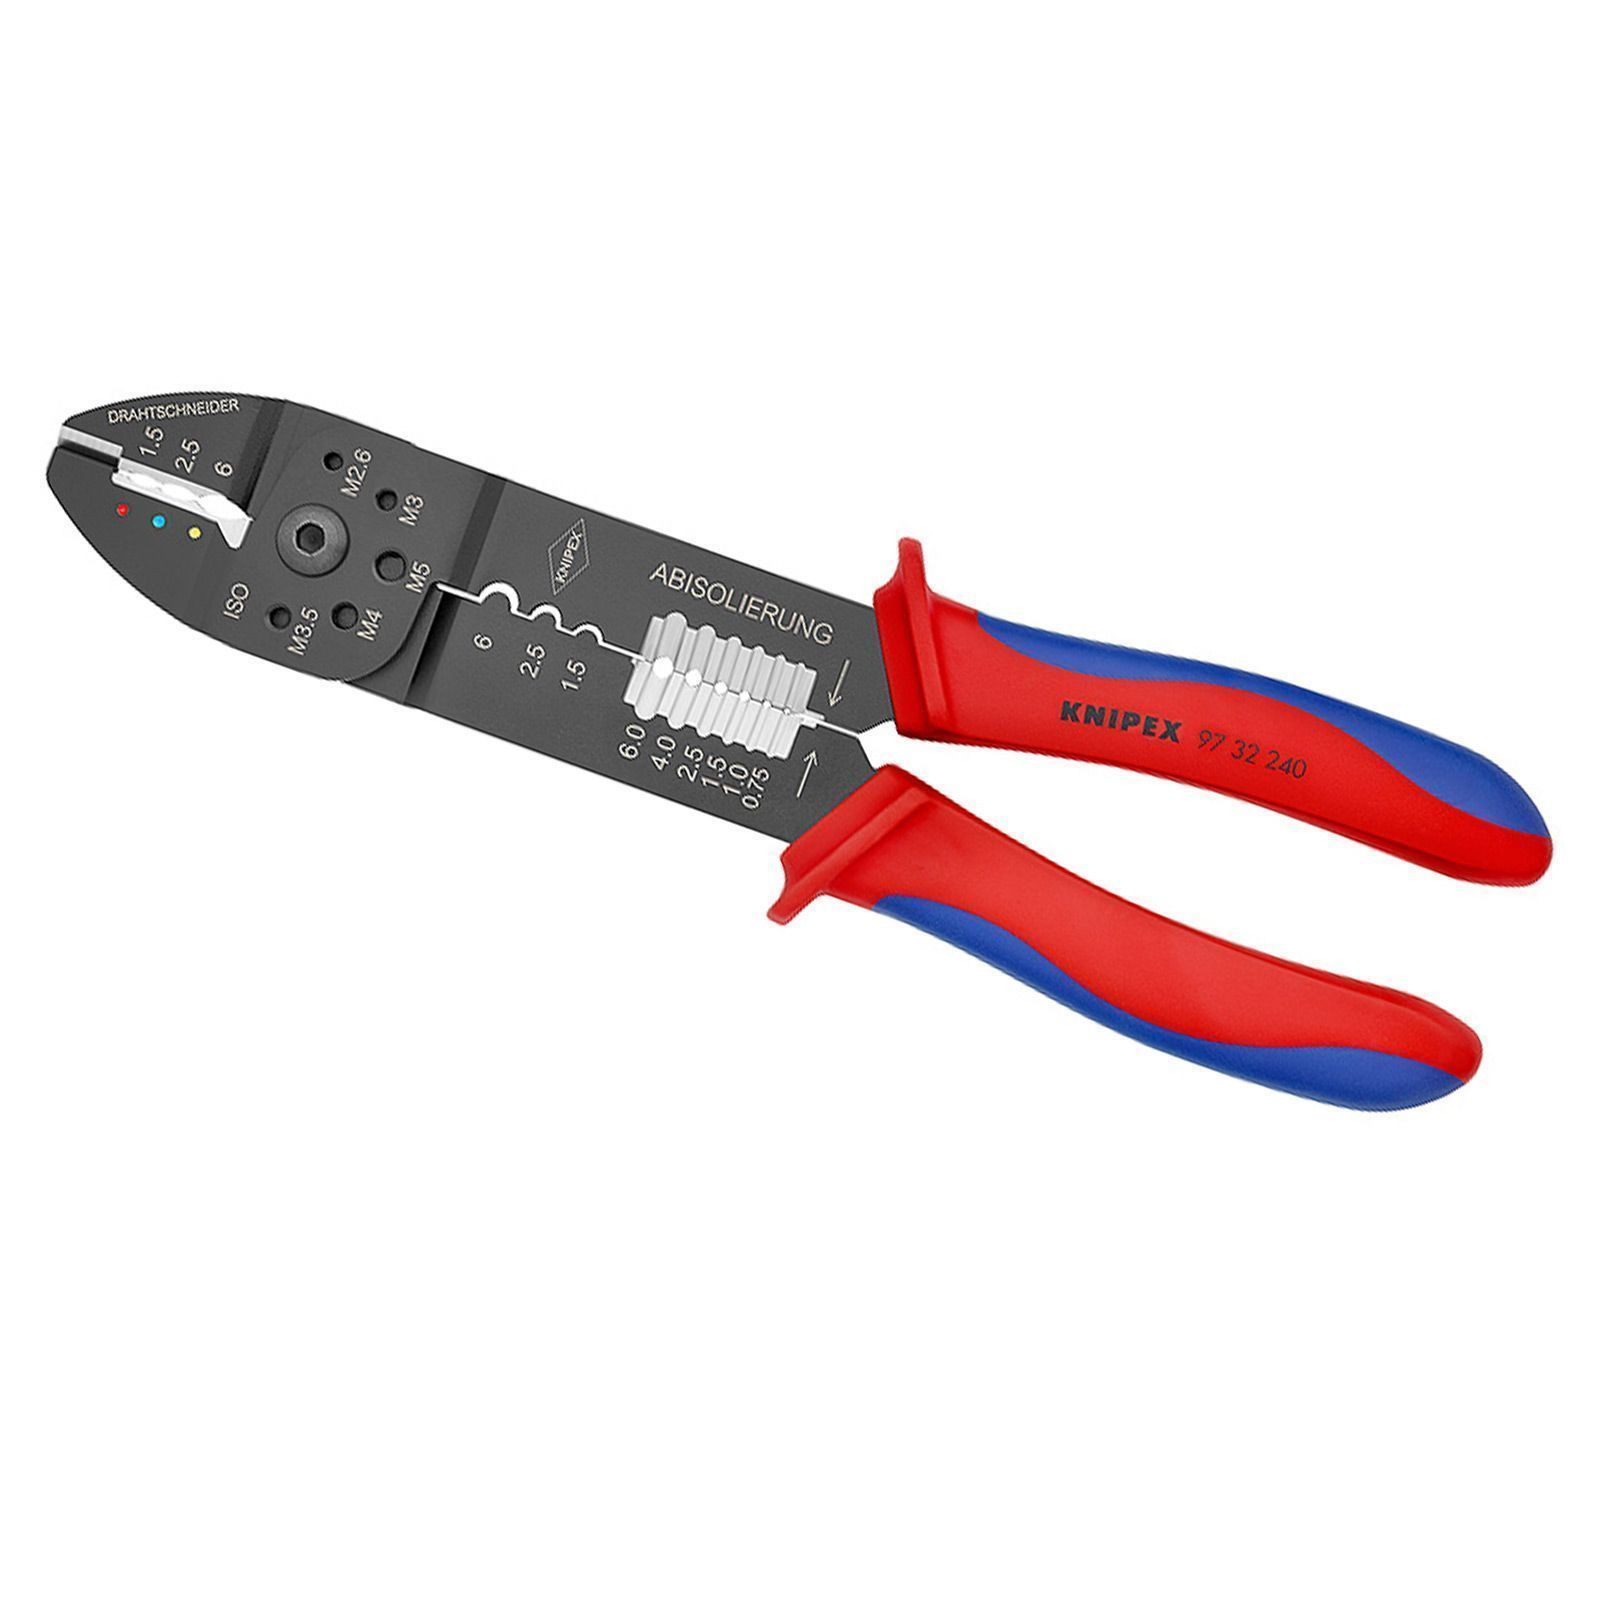 Knipex Crimpzange - 9732240 bei Werkzeugstore24